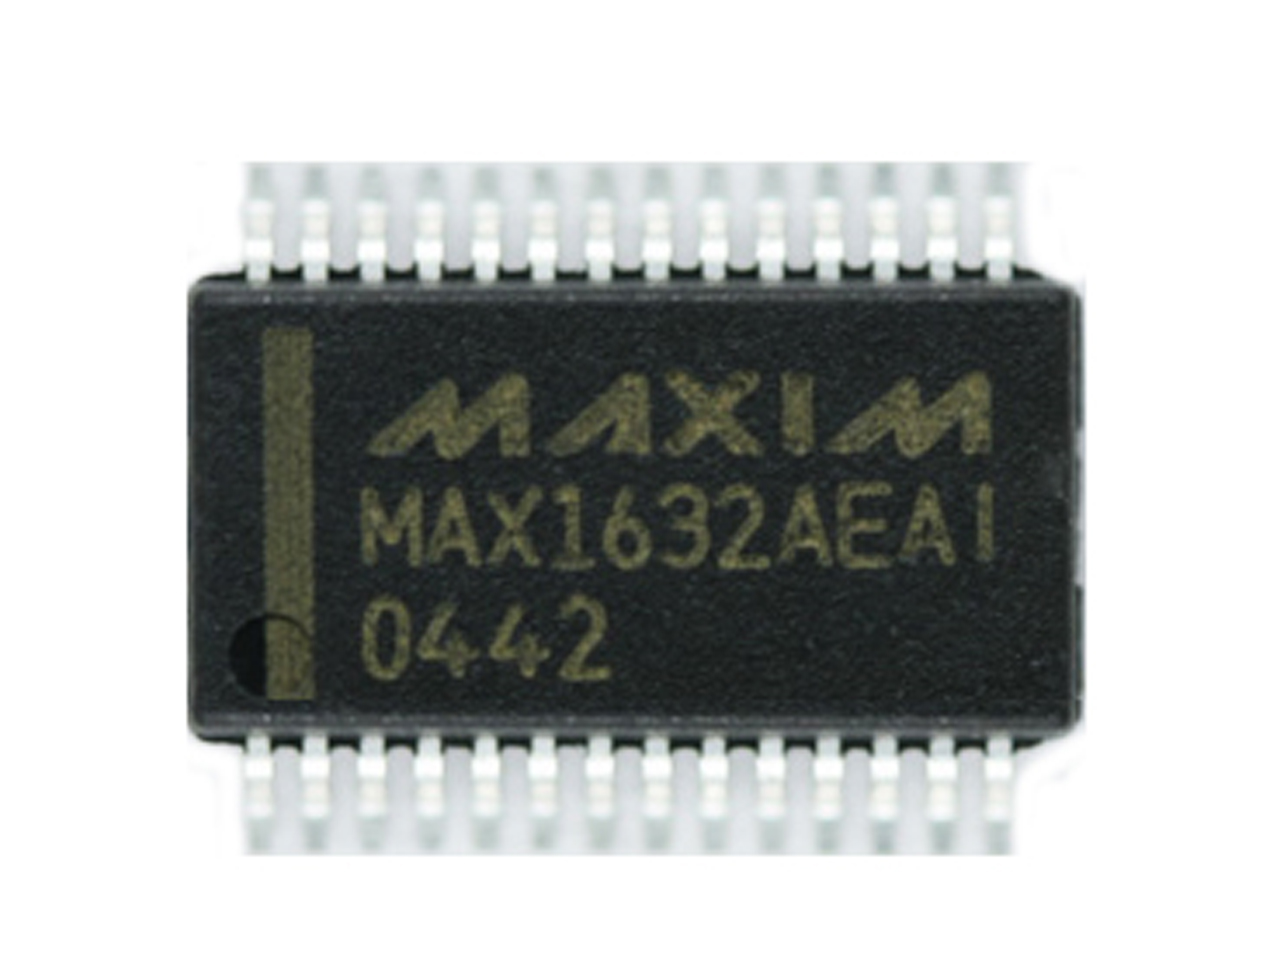 Maxim MAX1632AEAI